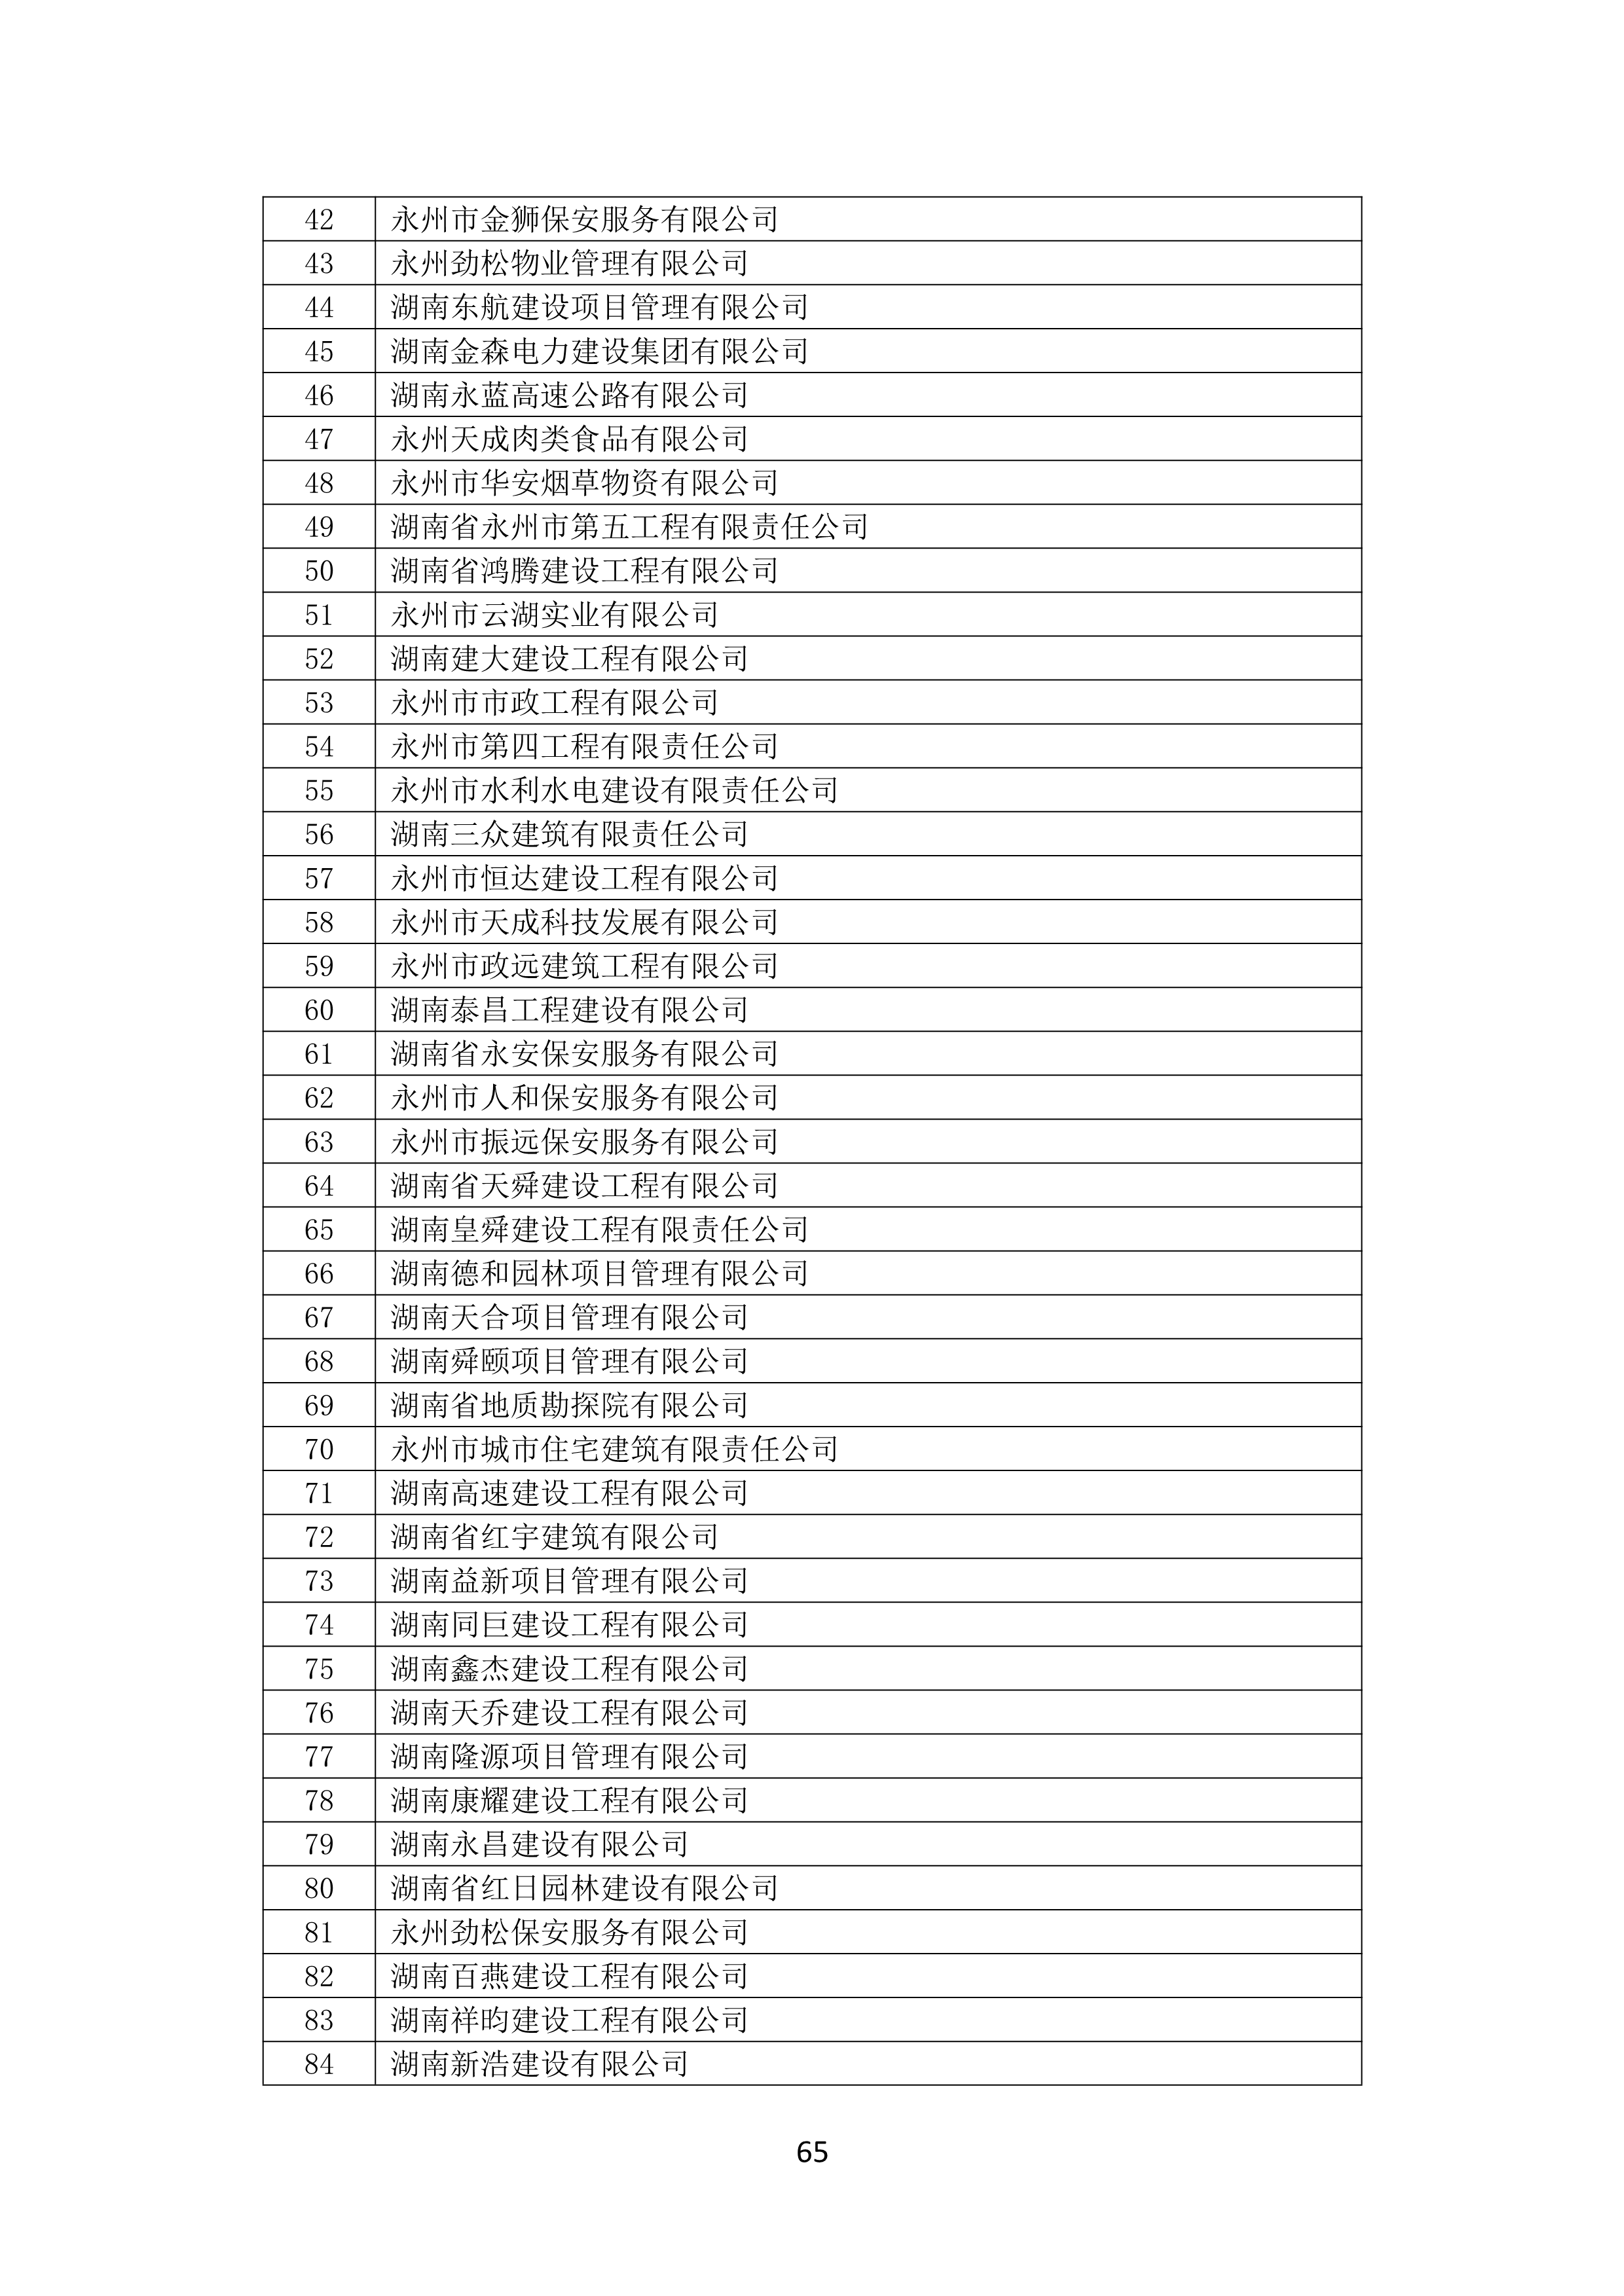 2021 年(nián)度湖南省守合同重信用企業名單_66.png